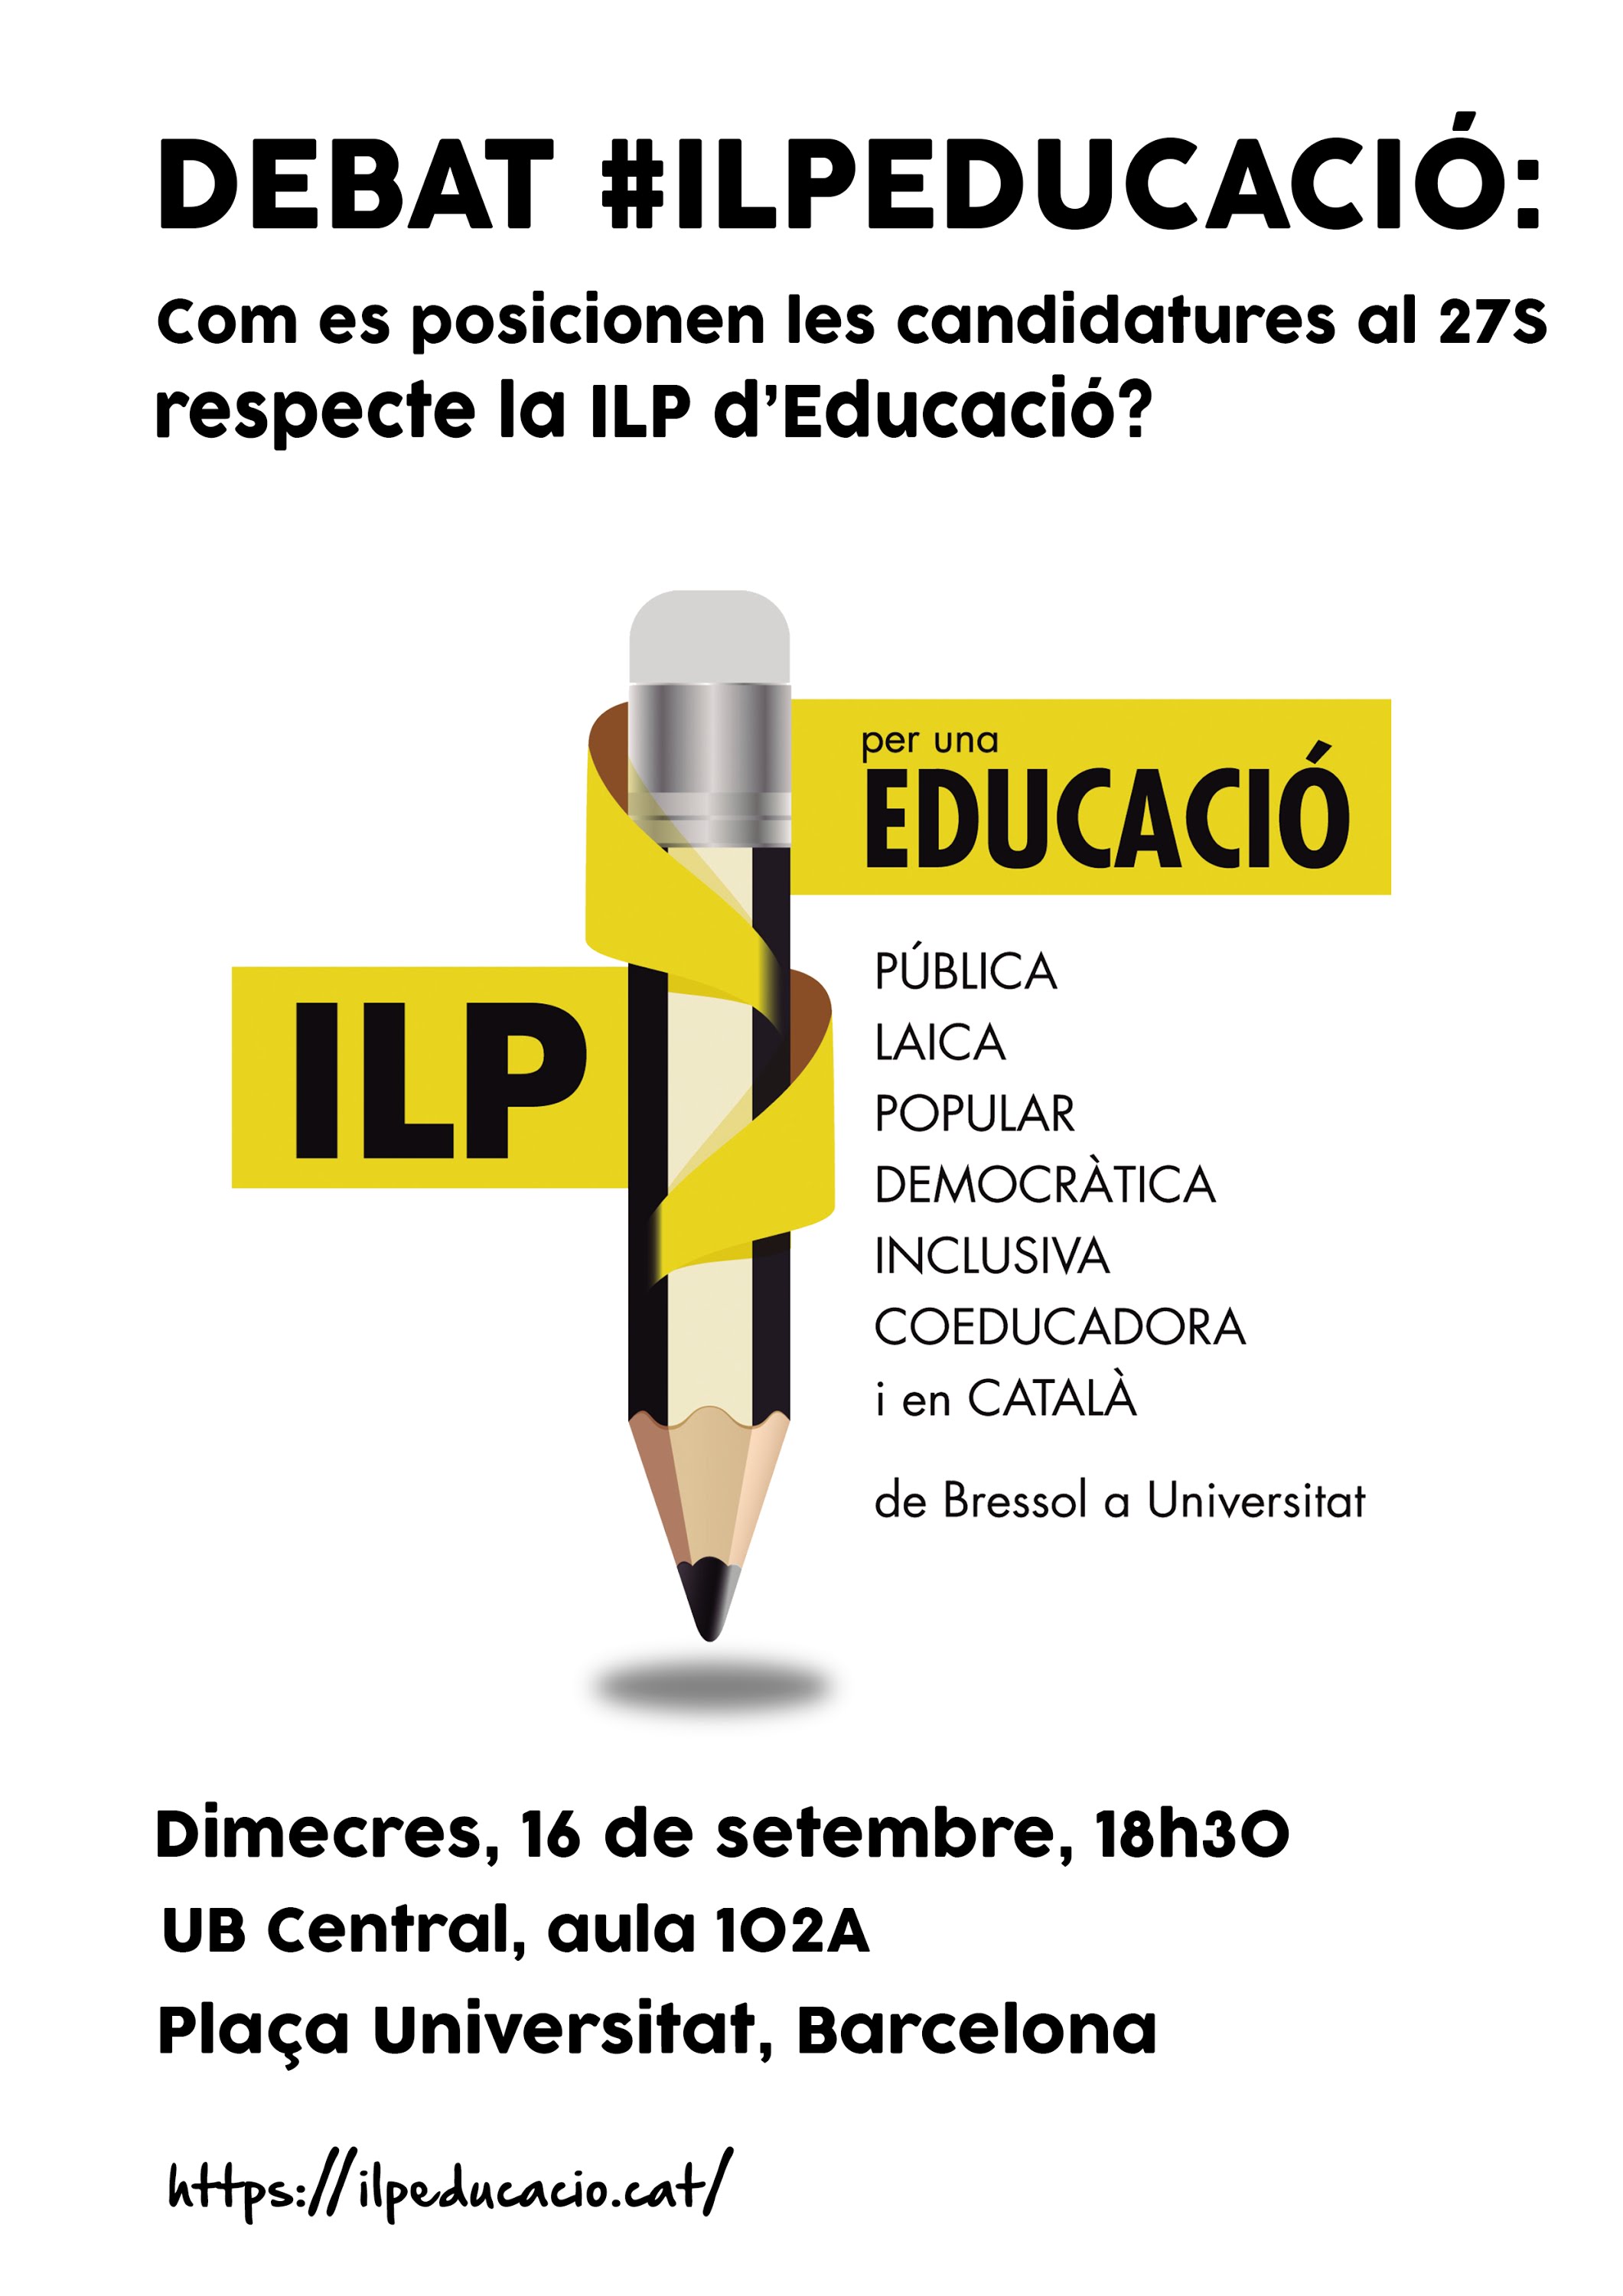 La ILP per l·educació pública va aconseguir recollir 95.000 firmes, gairebé el doble de les requerides per a una iniciativa legislativa popular a Catalunya. Amb la proximitat de les eleccions catalanes i la formació d·un nou Parlament volem que les candidatures al 27S es posicionin respecte la ILP.Esteu d·acord amb la gratuïtat de l·educació, des de Bressol fins a la Universitat? Esteu d·acord que els diners públics vagin tots per a la xarxa de titularitat i gestió públiques? Esteu d·acord amb una gestió democràtica dels centres públics? Quin serà el vostre posicionament quan la ILP d·educació es presenti en el Parlament?Per a respondre a aquestes preguntes i molt més, us convidem a les 18.30h del dimecres 16 de setembre a la UB, per a un debat amb representants de candidatures al 27S.A hores d·ara ens han confirmat la seva assistència representants de 4 de les candidatures: Ana del Frago, pel PSC; Quim Arrufat, per la CUP; Montse Navarro, per CSQEP; i Sonia Sierra de Ciutadans.La ILP per un nou sistema educatiu a Catalunya reivindica una educació pública gratuïta de bressol a universitat. La iniciativa pretén lluitar contra la creixent mercantilització del sistema educatiu, perquè l·educació de qualitat sigui un dret al que hi pugui accedir tothom sense importar el seu origen social. I per a fer-ho viable proposa eliminar els concerts escolars en un període de 10 anys.Podeu trobar tota la informació relativa a la ILP al nostre web ilpeducacio.cat, així com l·articulat complet de la ILP.